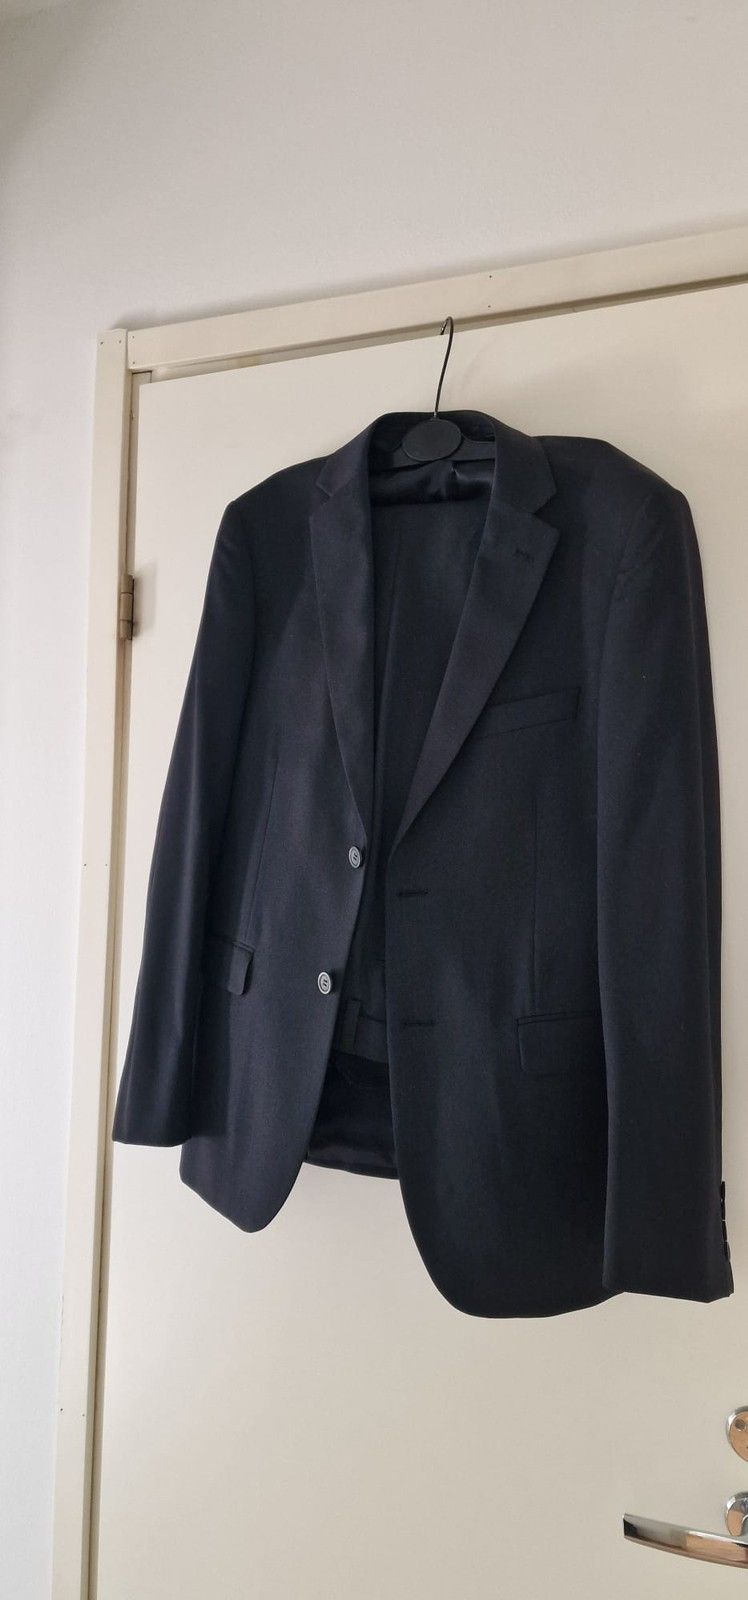 Dressmann musta puvun takki ja housut